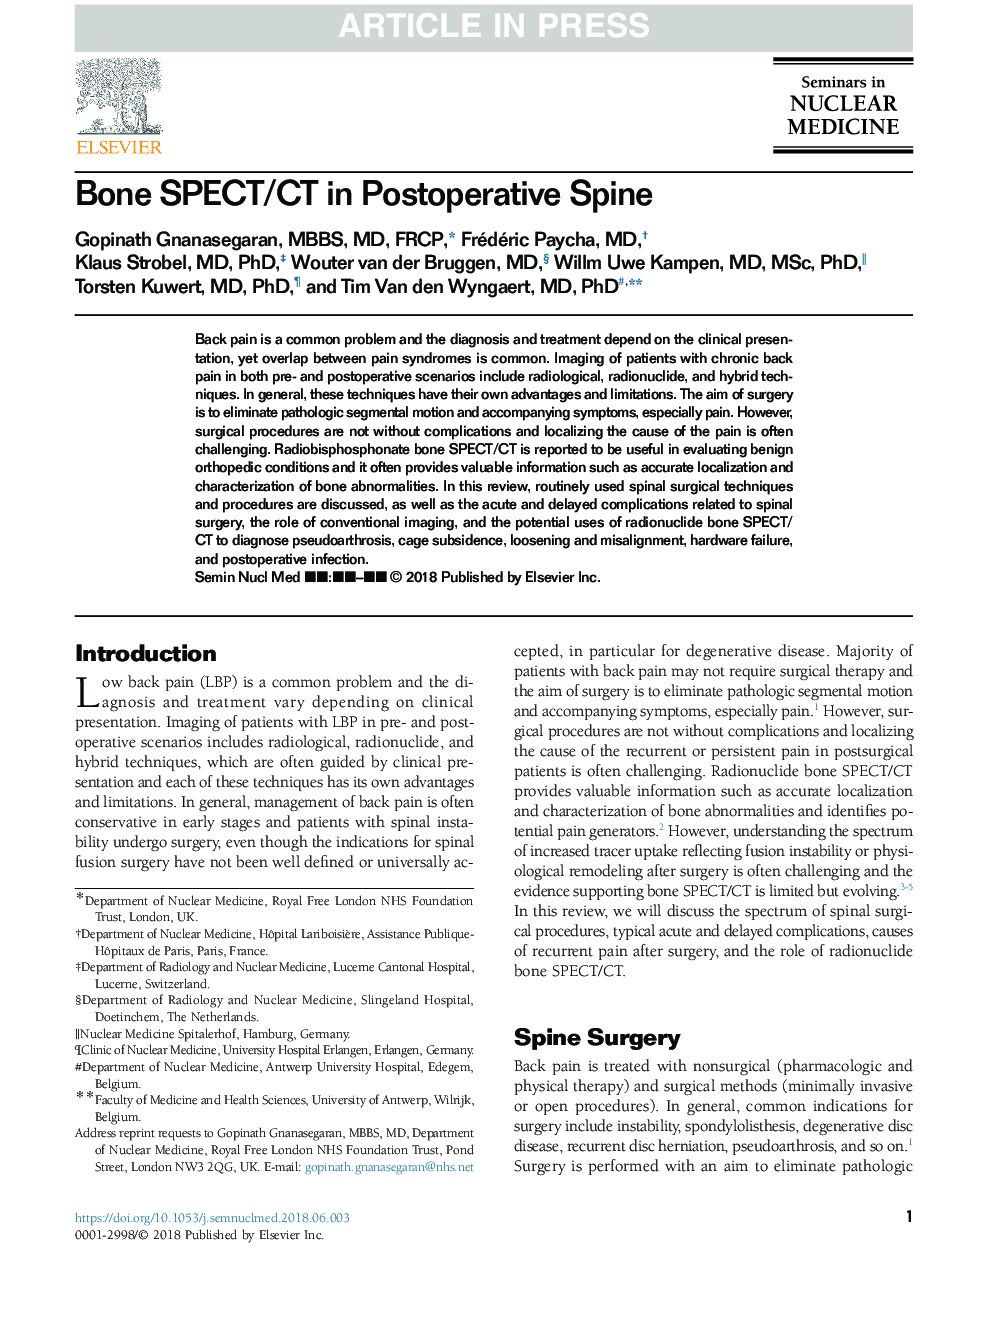 Bone SPECT/CT in Postoperative Spine